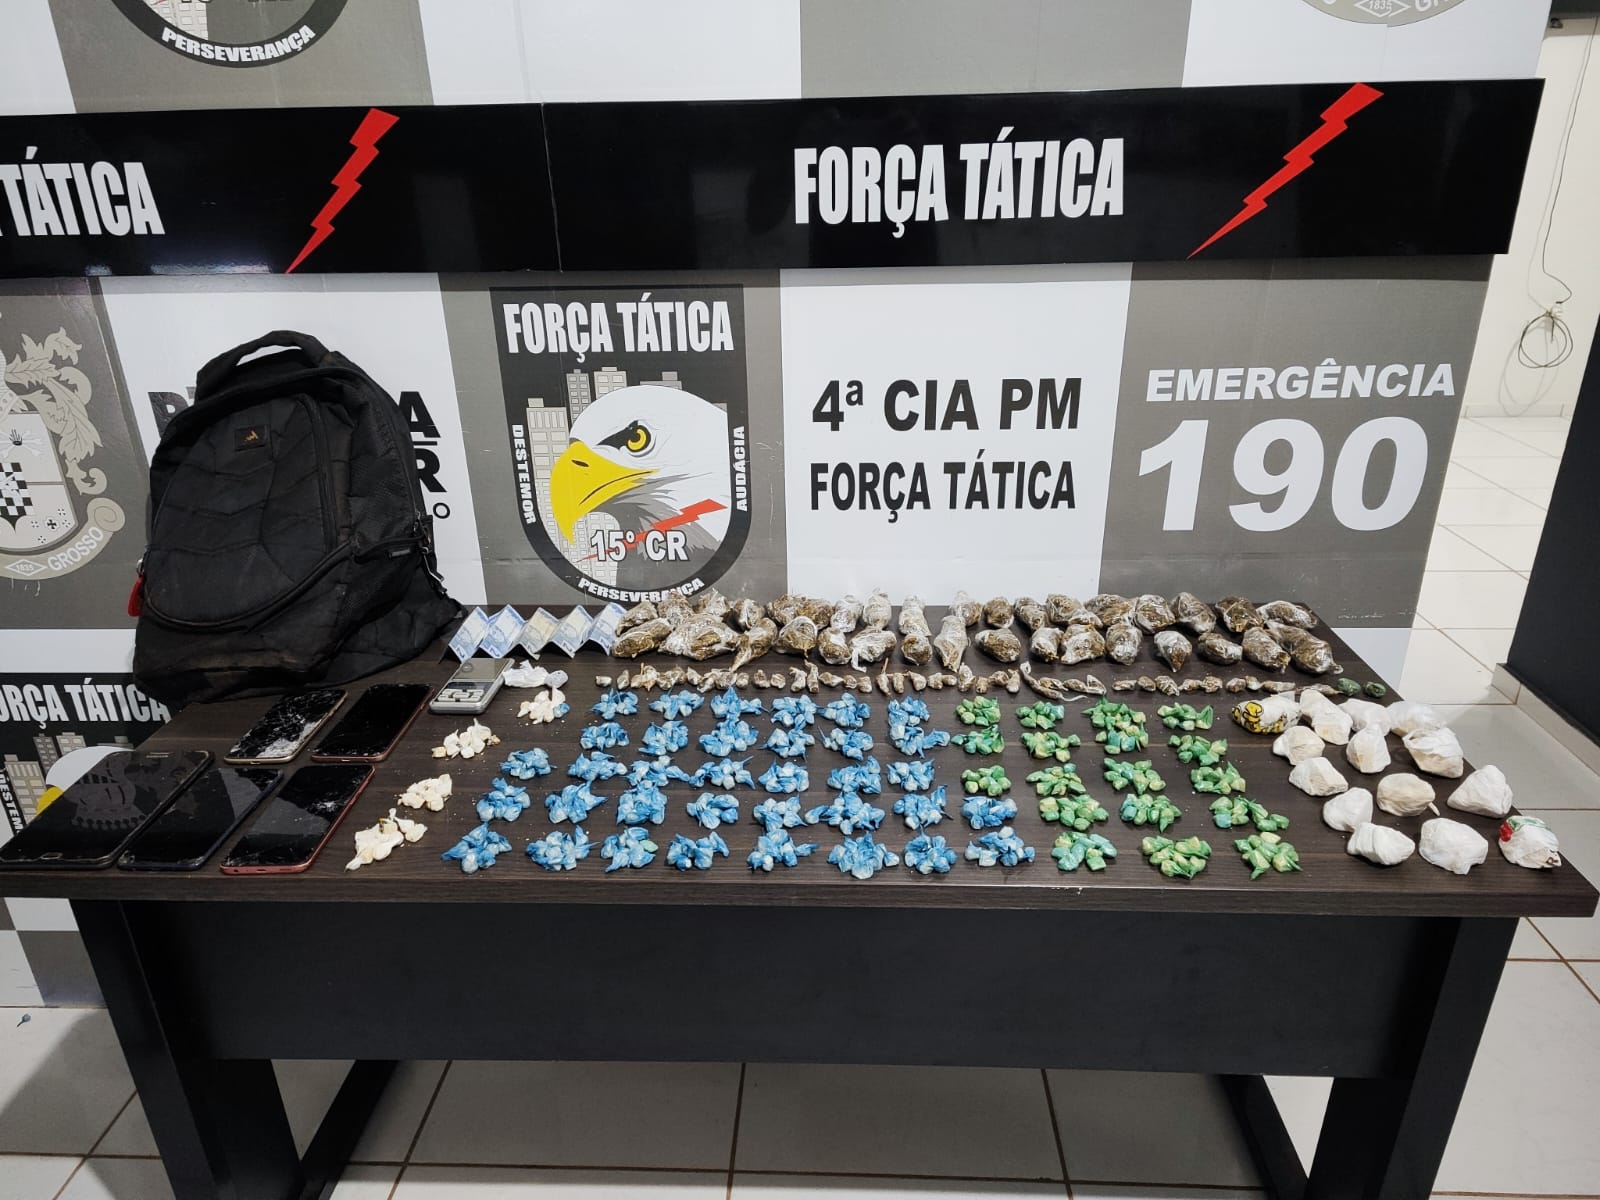 Novo Mundo: Força Tática prende seis pessoas acusadas de tráfico e comercialização de drogas.  VEJA O VÍDEO